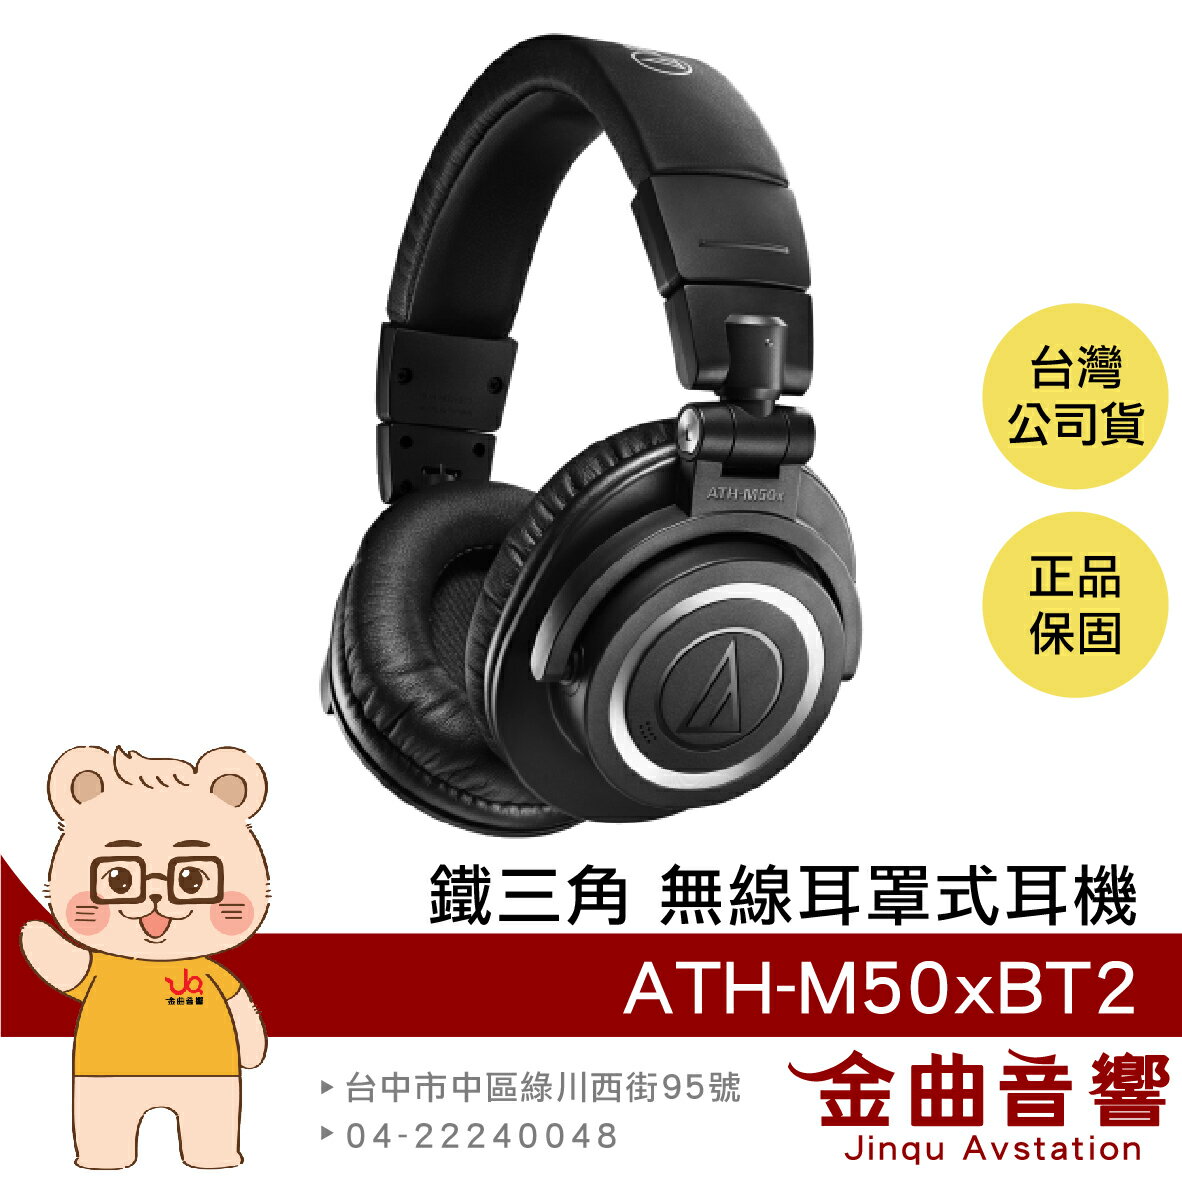 鐵三角 ATH-M50xBT2 黑色 藍芽 耳罩式 耳機 無線 低延遲 | 金曲音響